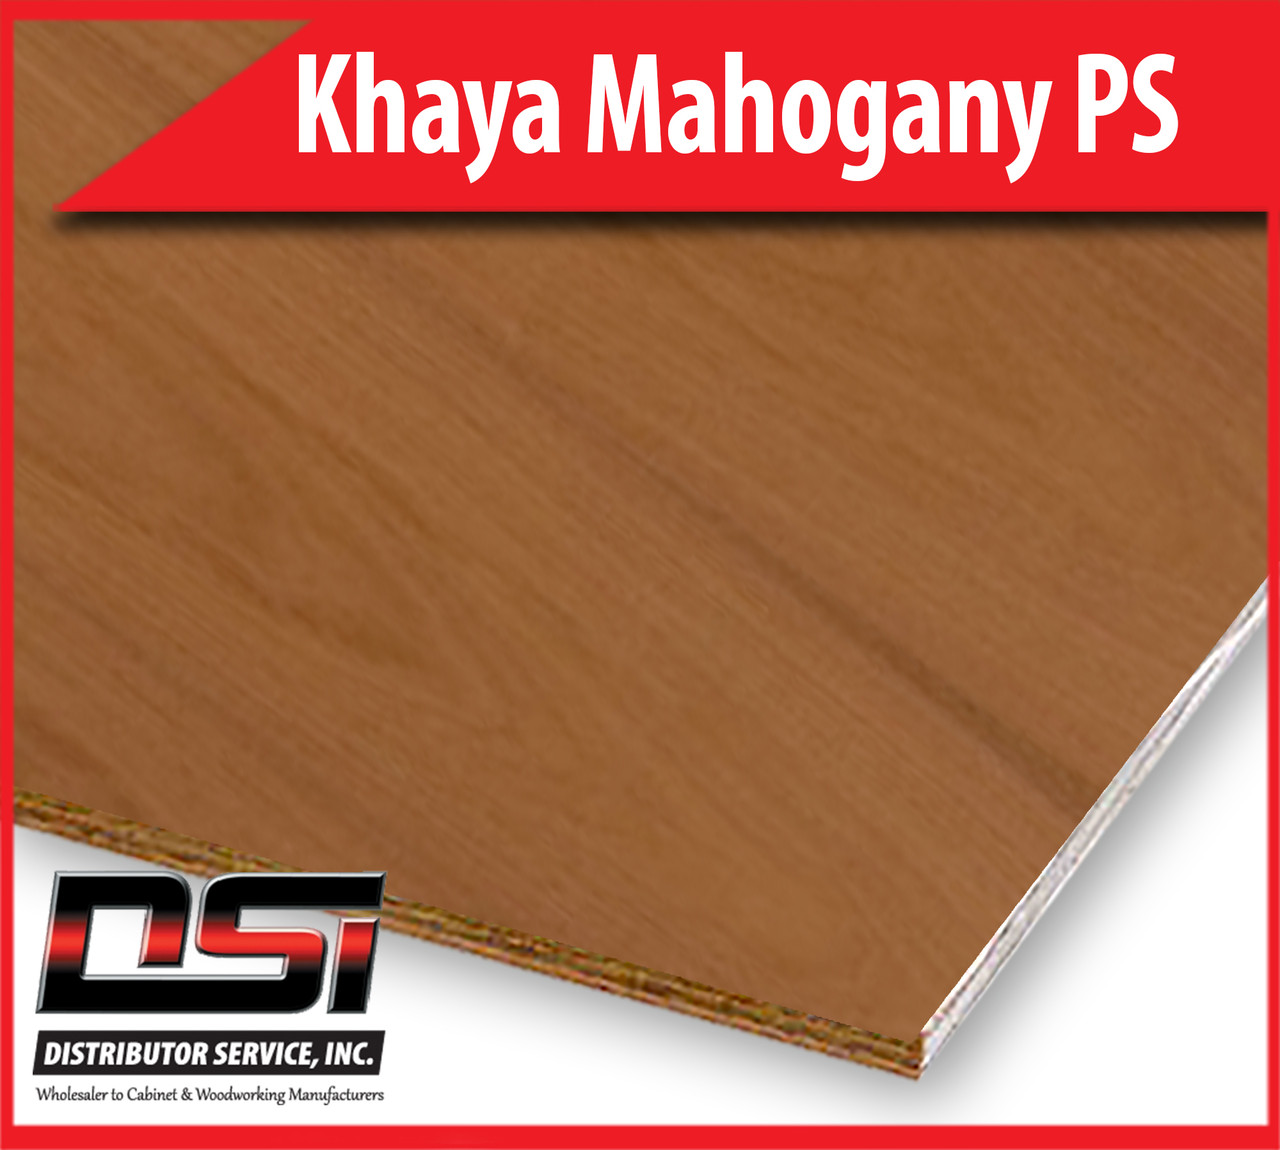 Khaya Mahogany Plywood Plain Sliced  VC A1 3/4" x 4x8